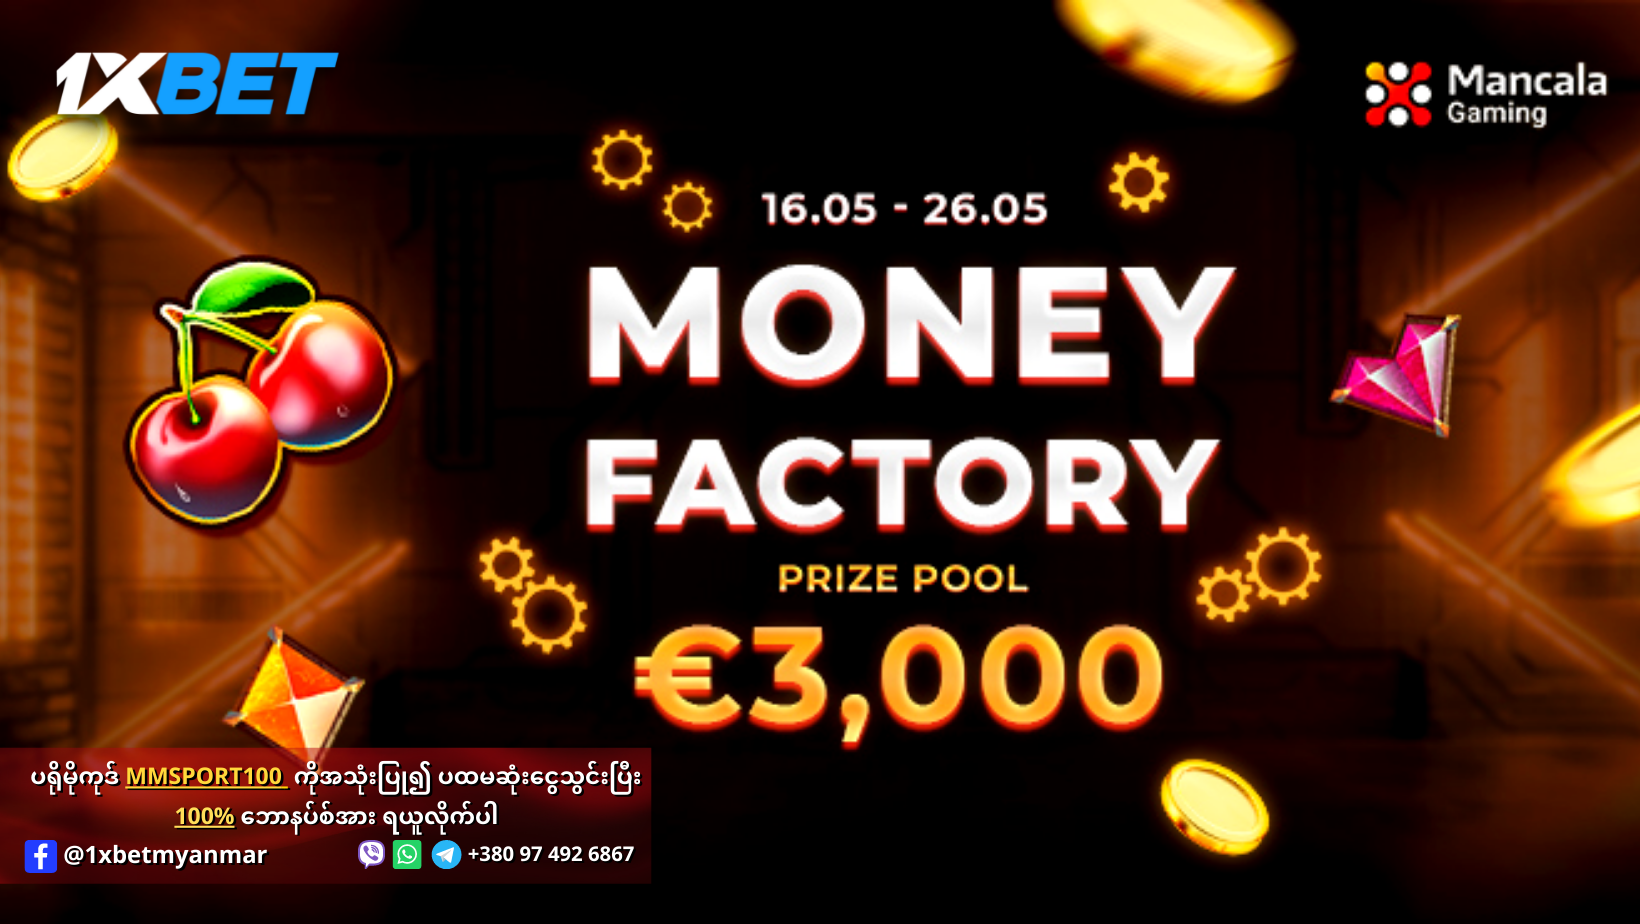 1xBet Money Factory